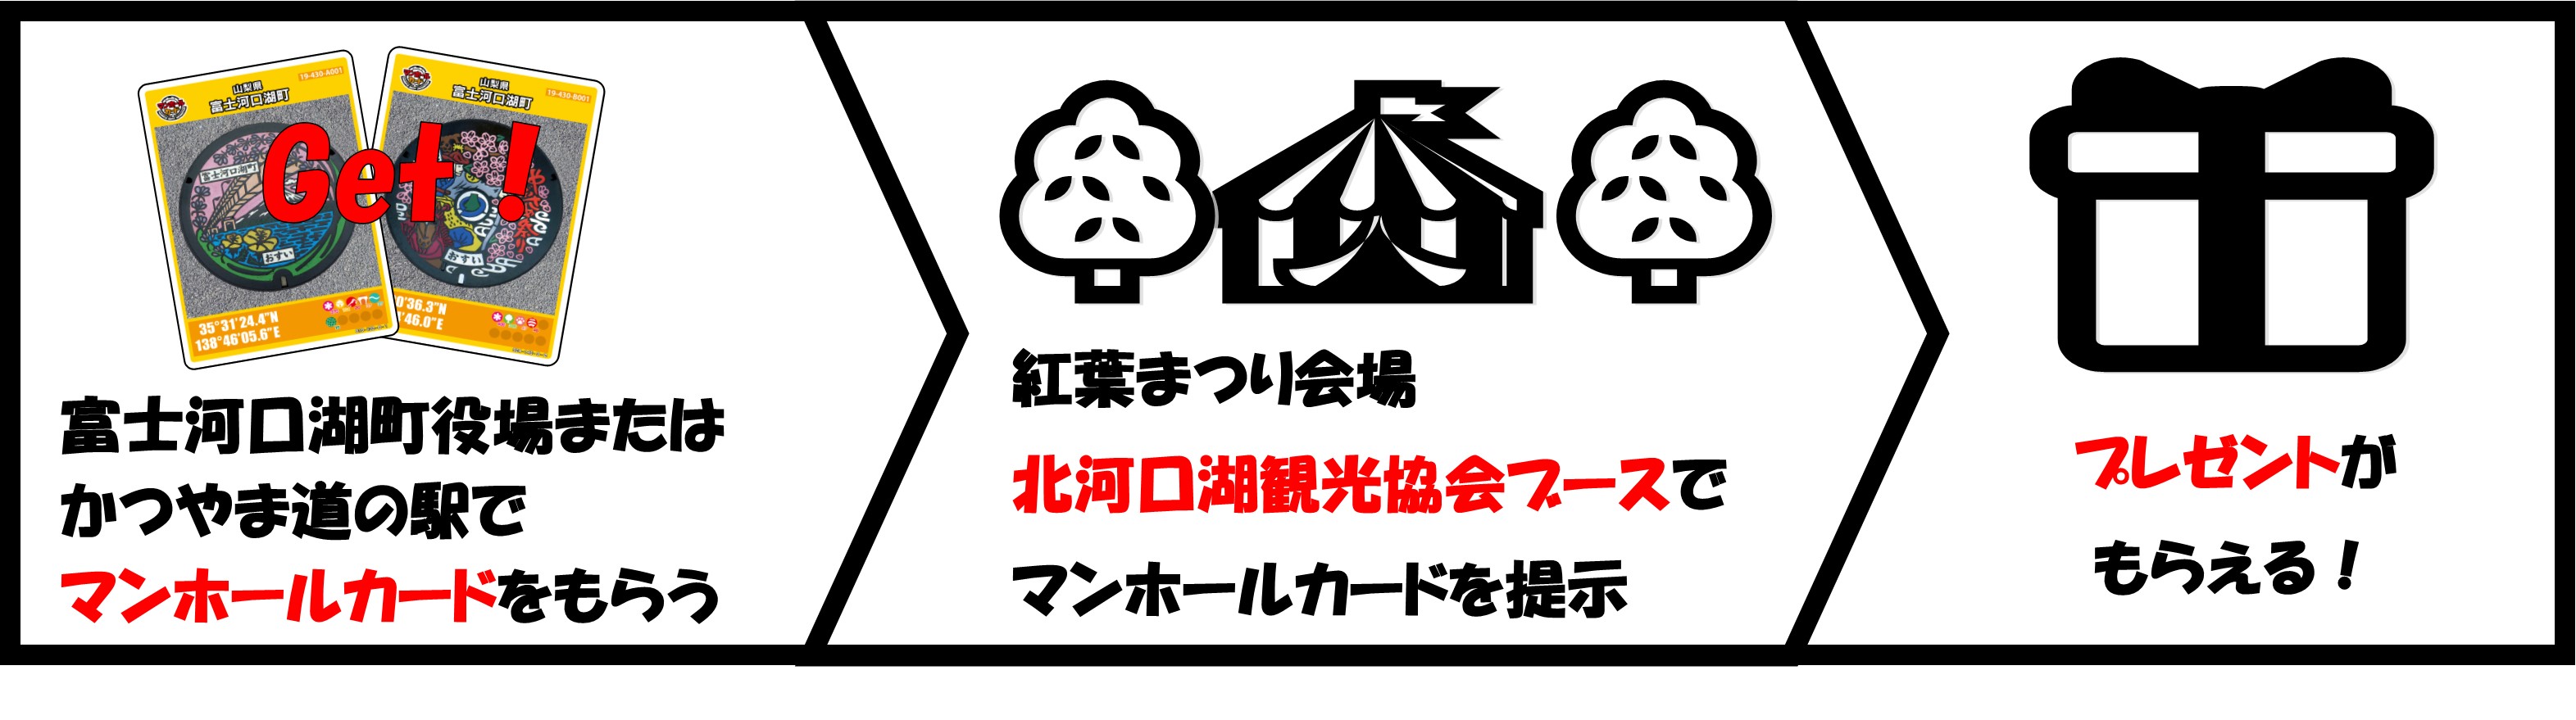 下水道広報】マンホールカード×観光キャンペーンについて | 富士河口湖